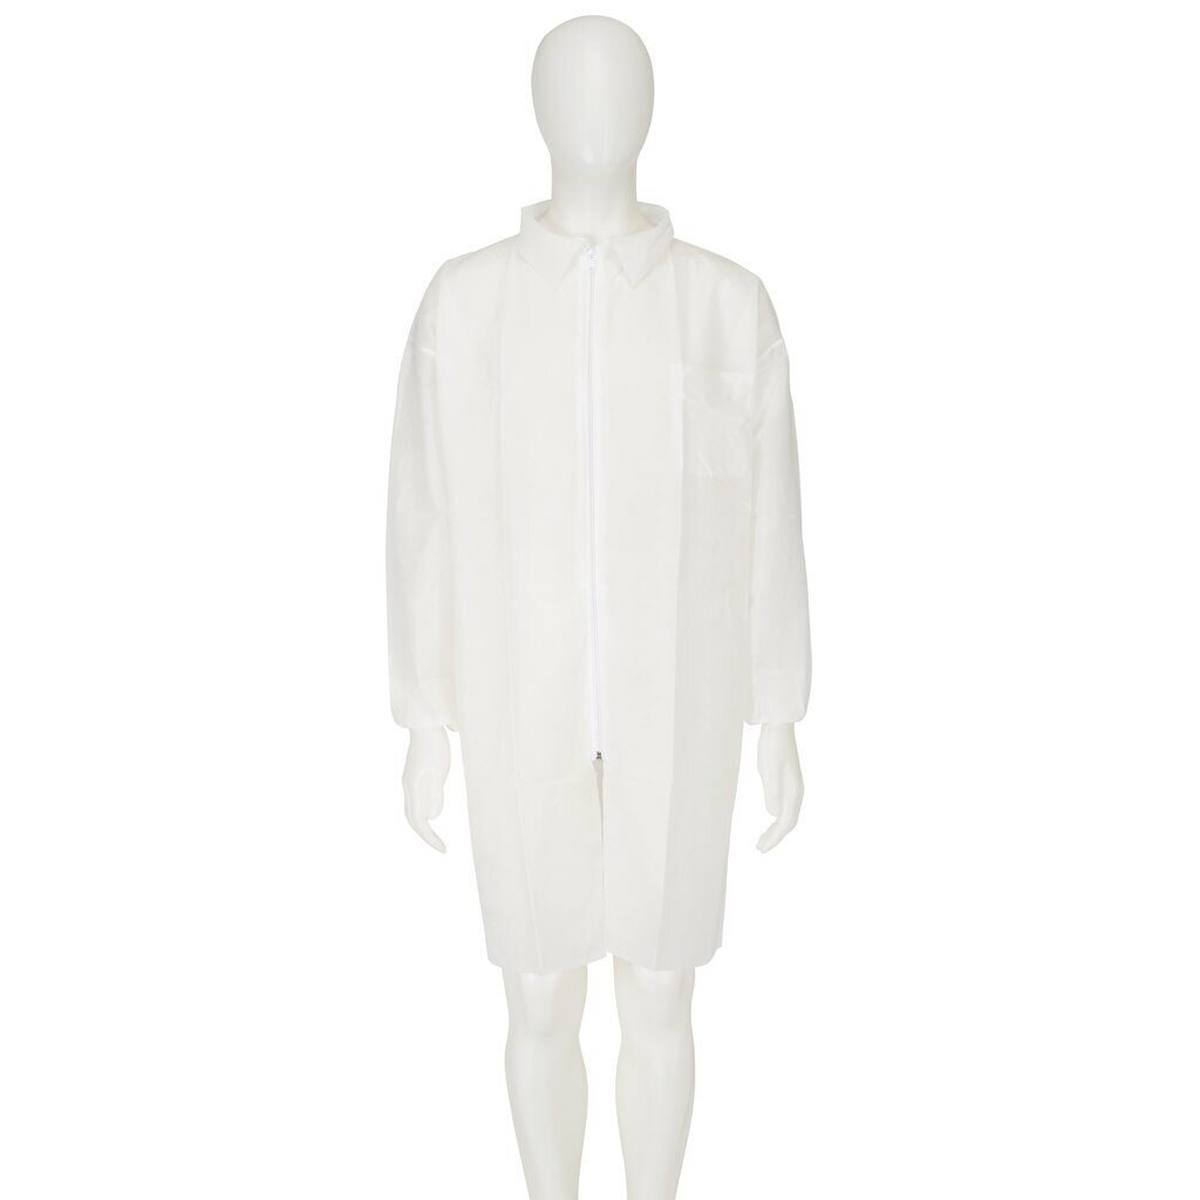 3M 4400 Manteau, blanc, taille 4XL, matériel 100% polypropylène, respirant, très léger, avec fermeture éclair